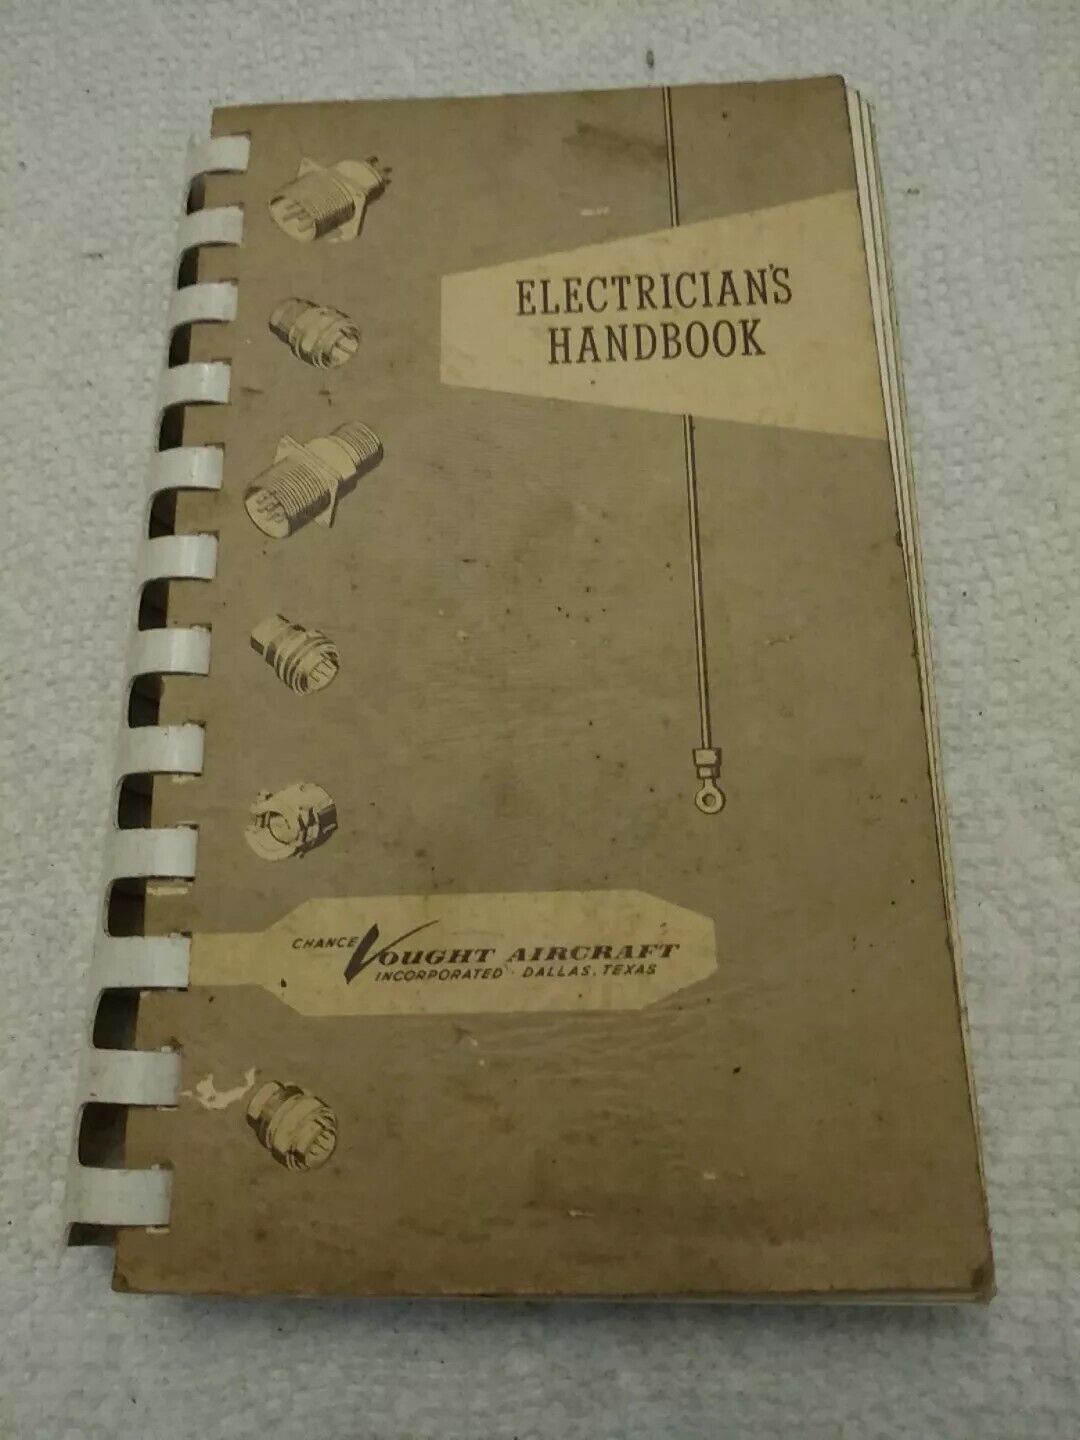 Chance Vought Aircraft 1959 Electrician Handbook